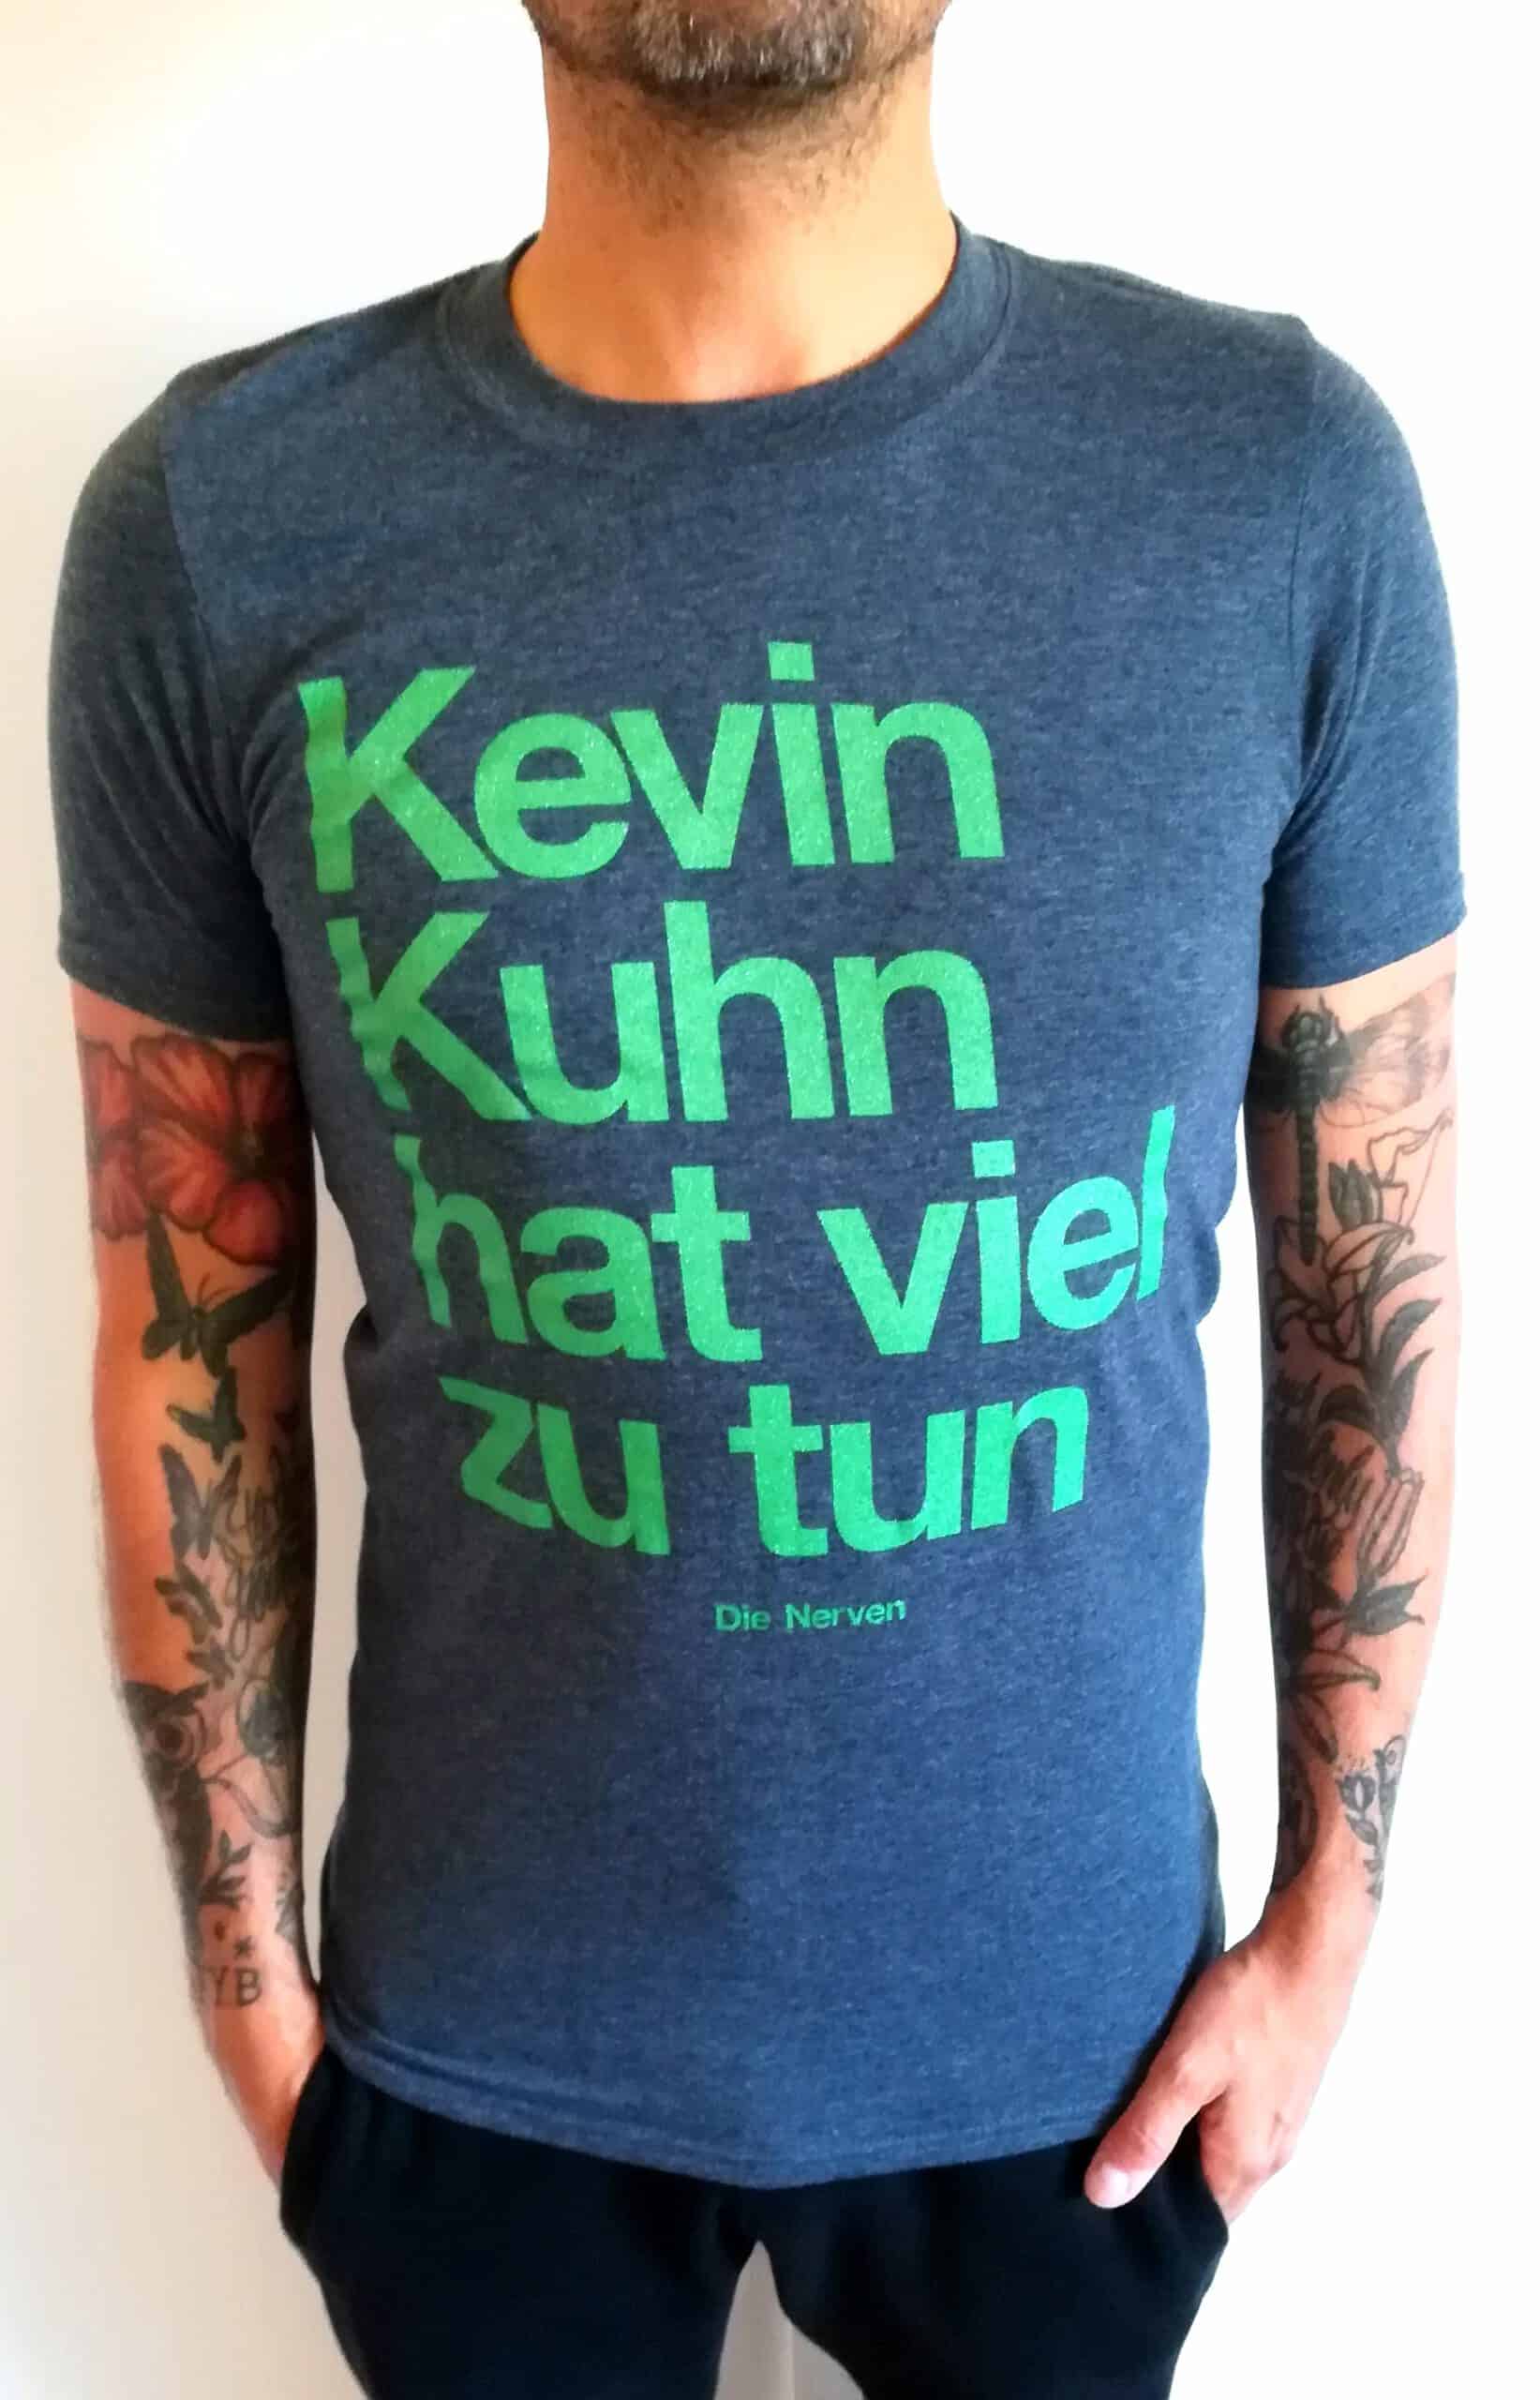 Die Nerven - Kevin Kuhn Shirt